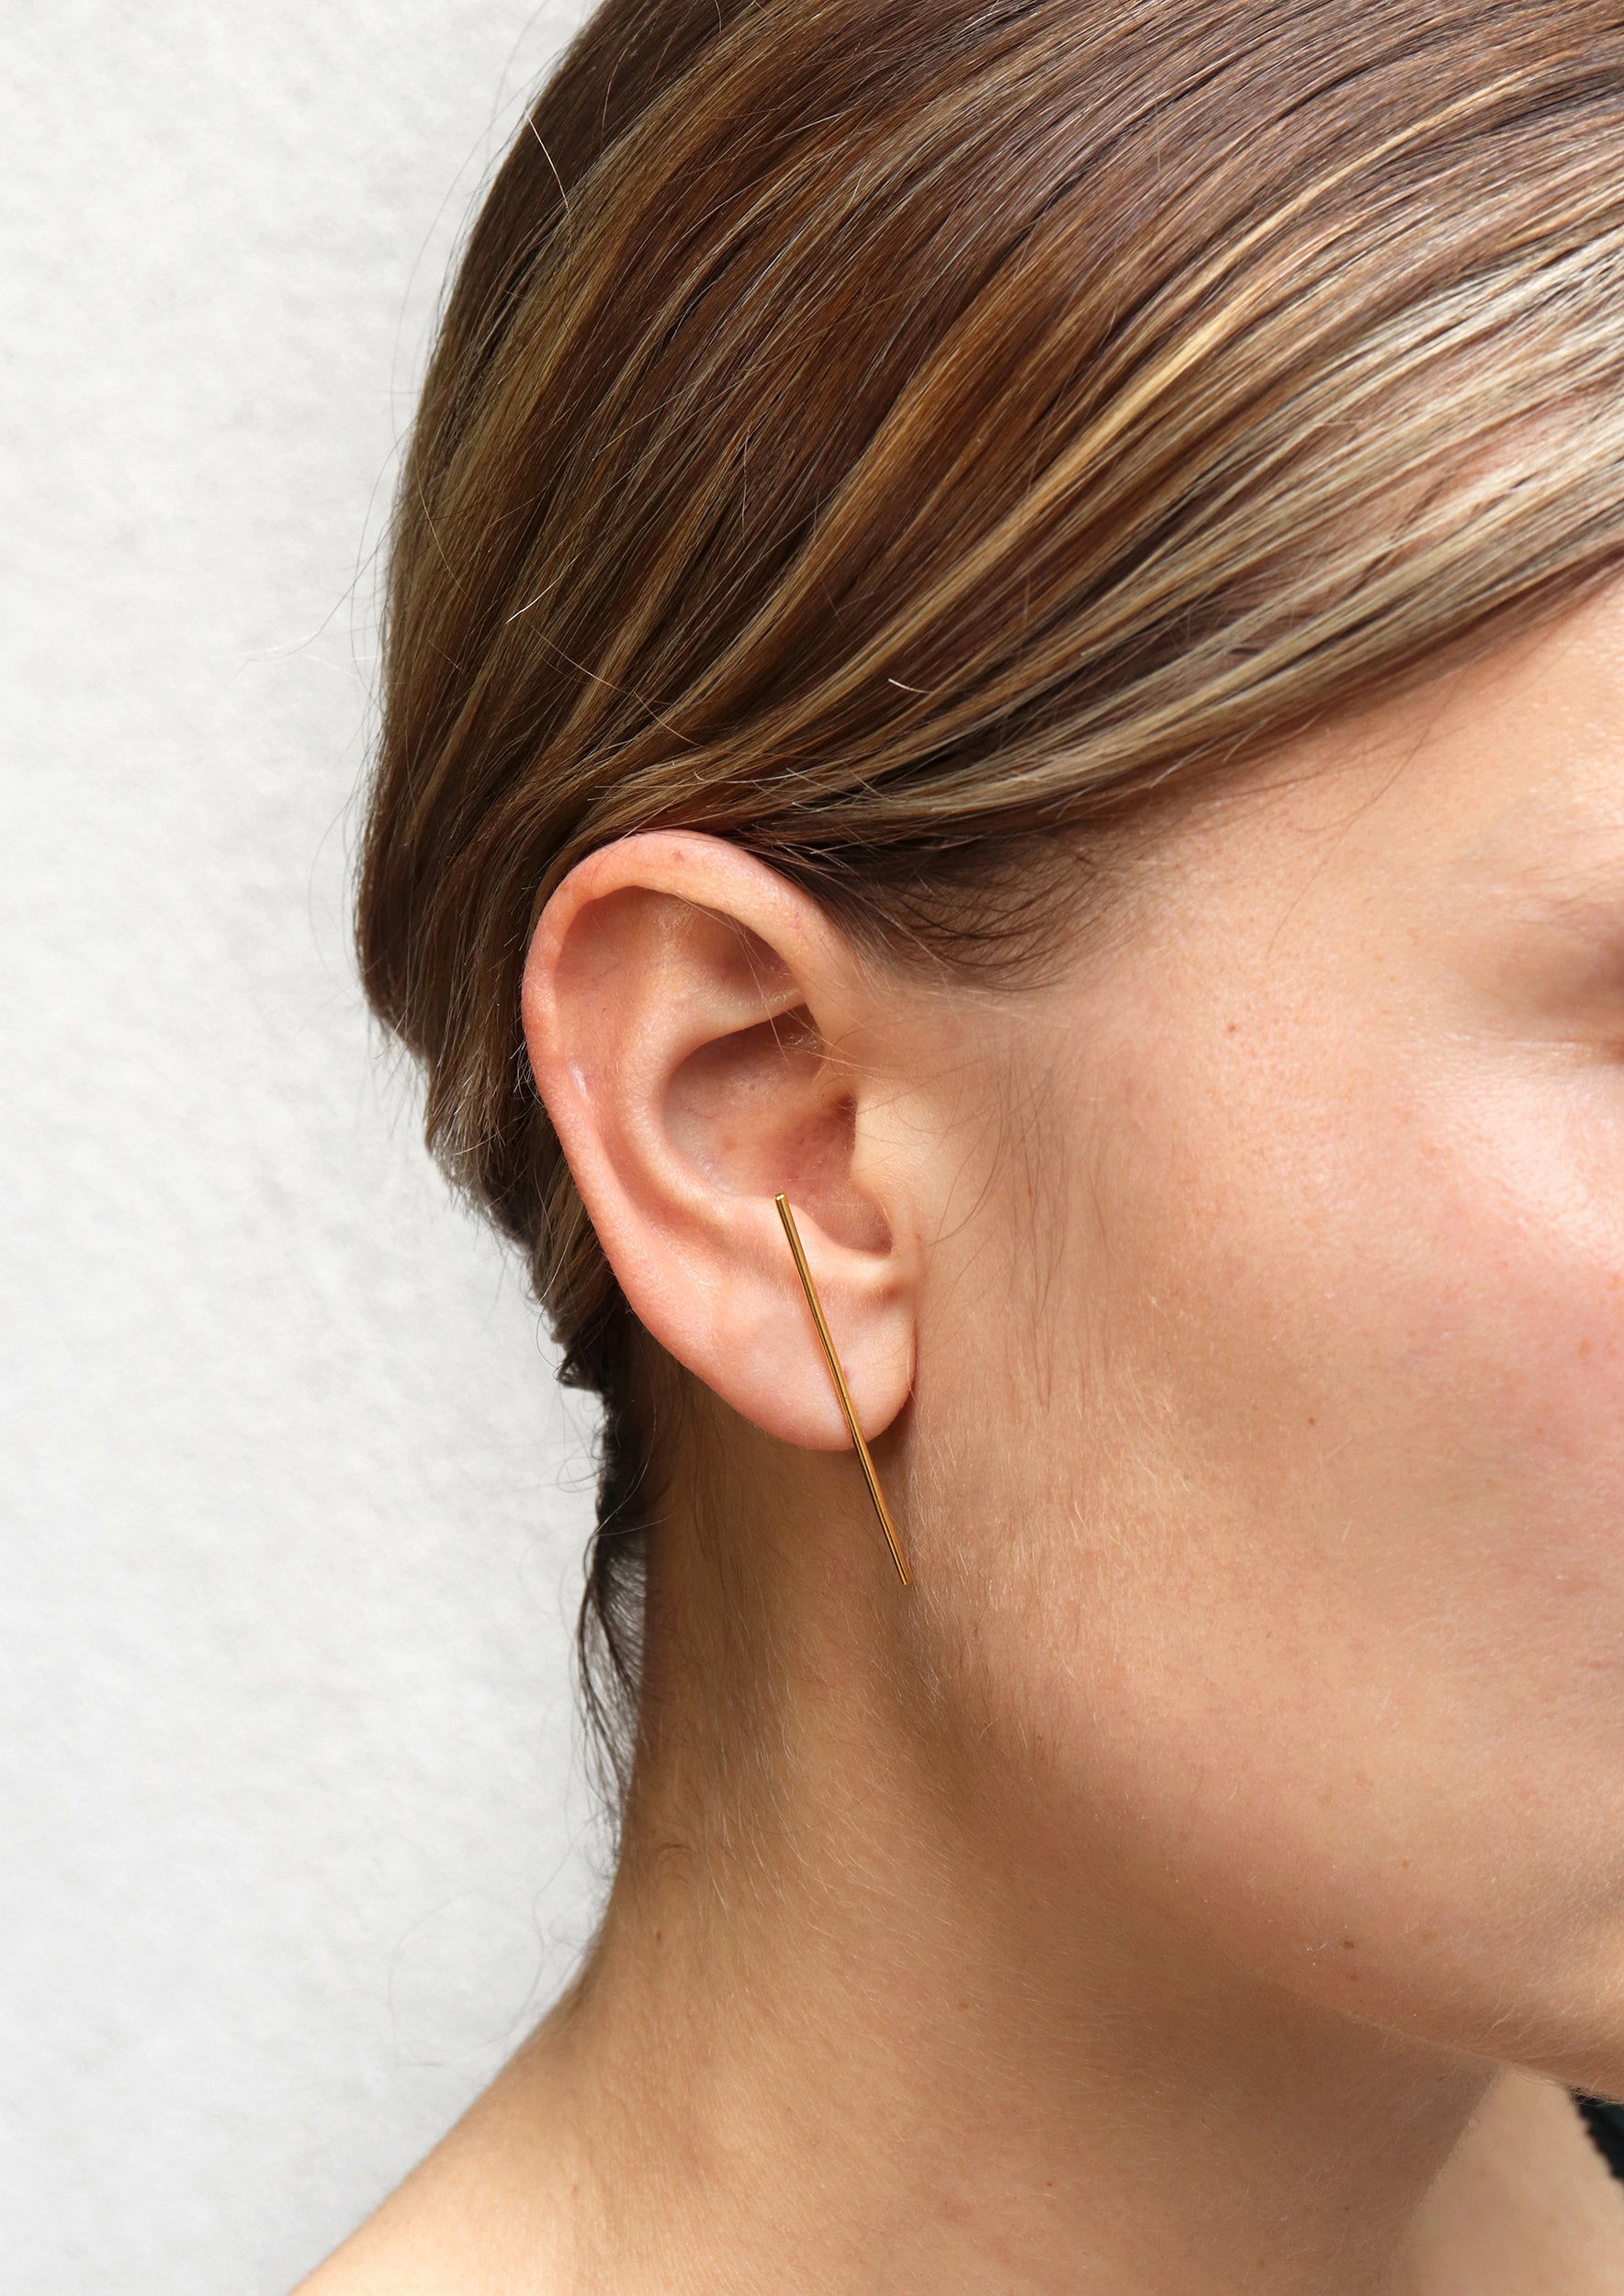 18KT yellow gold earring worn by a female ear - Linea 1E